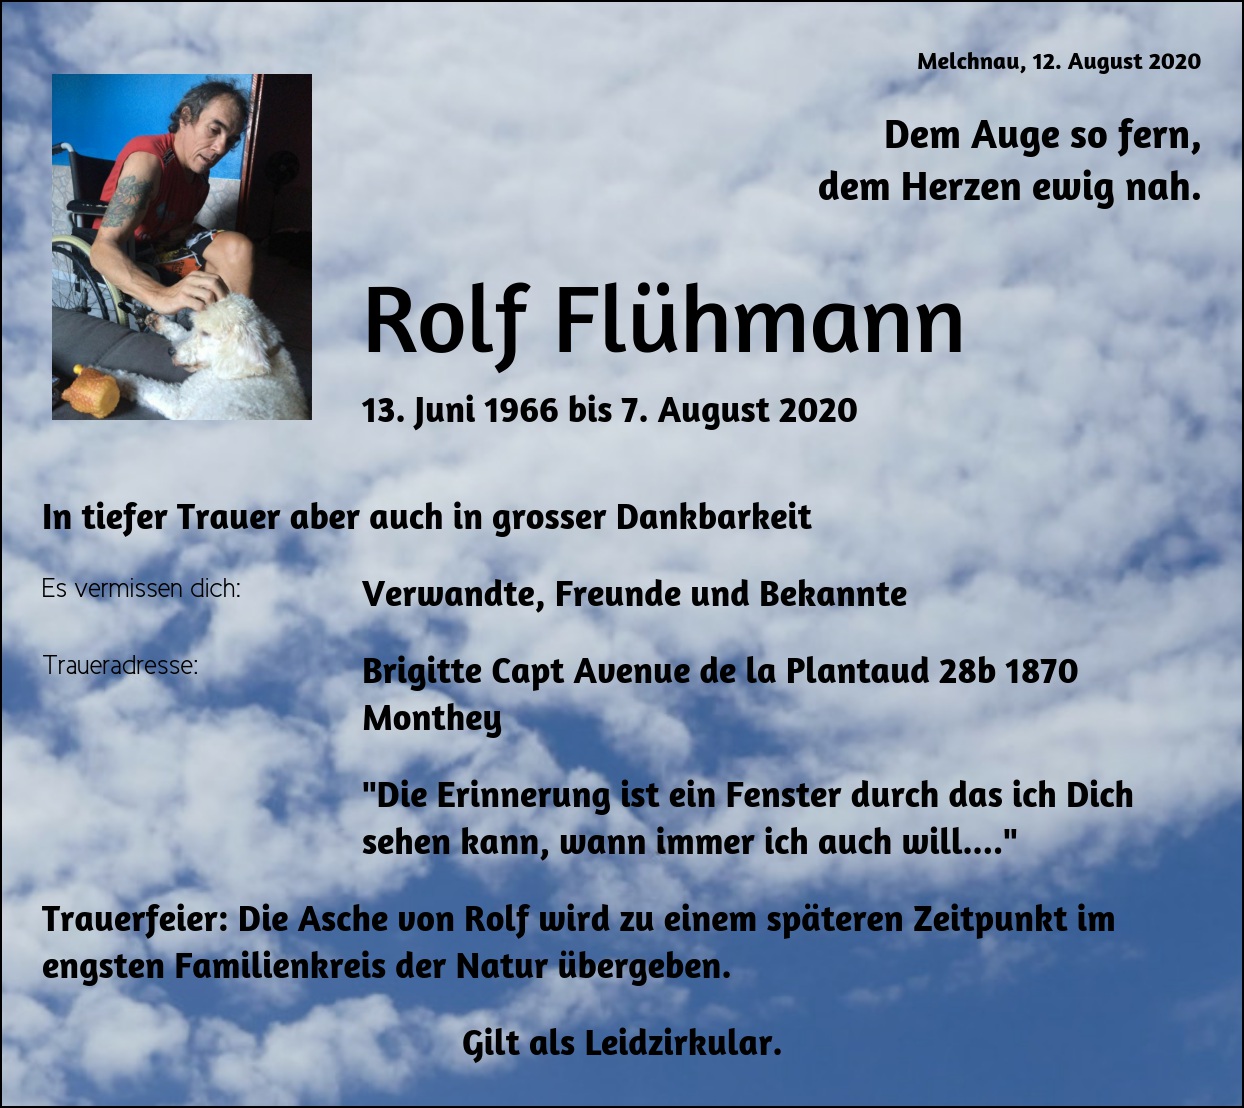 Rolf Flühmann